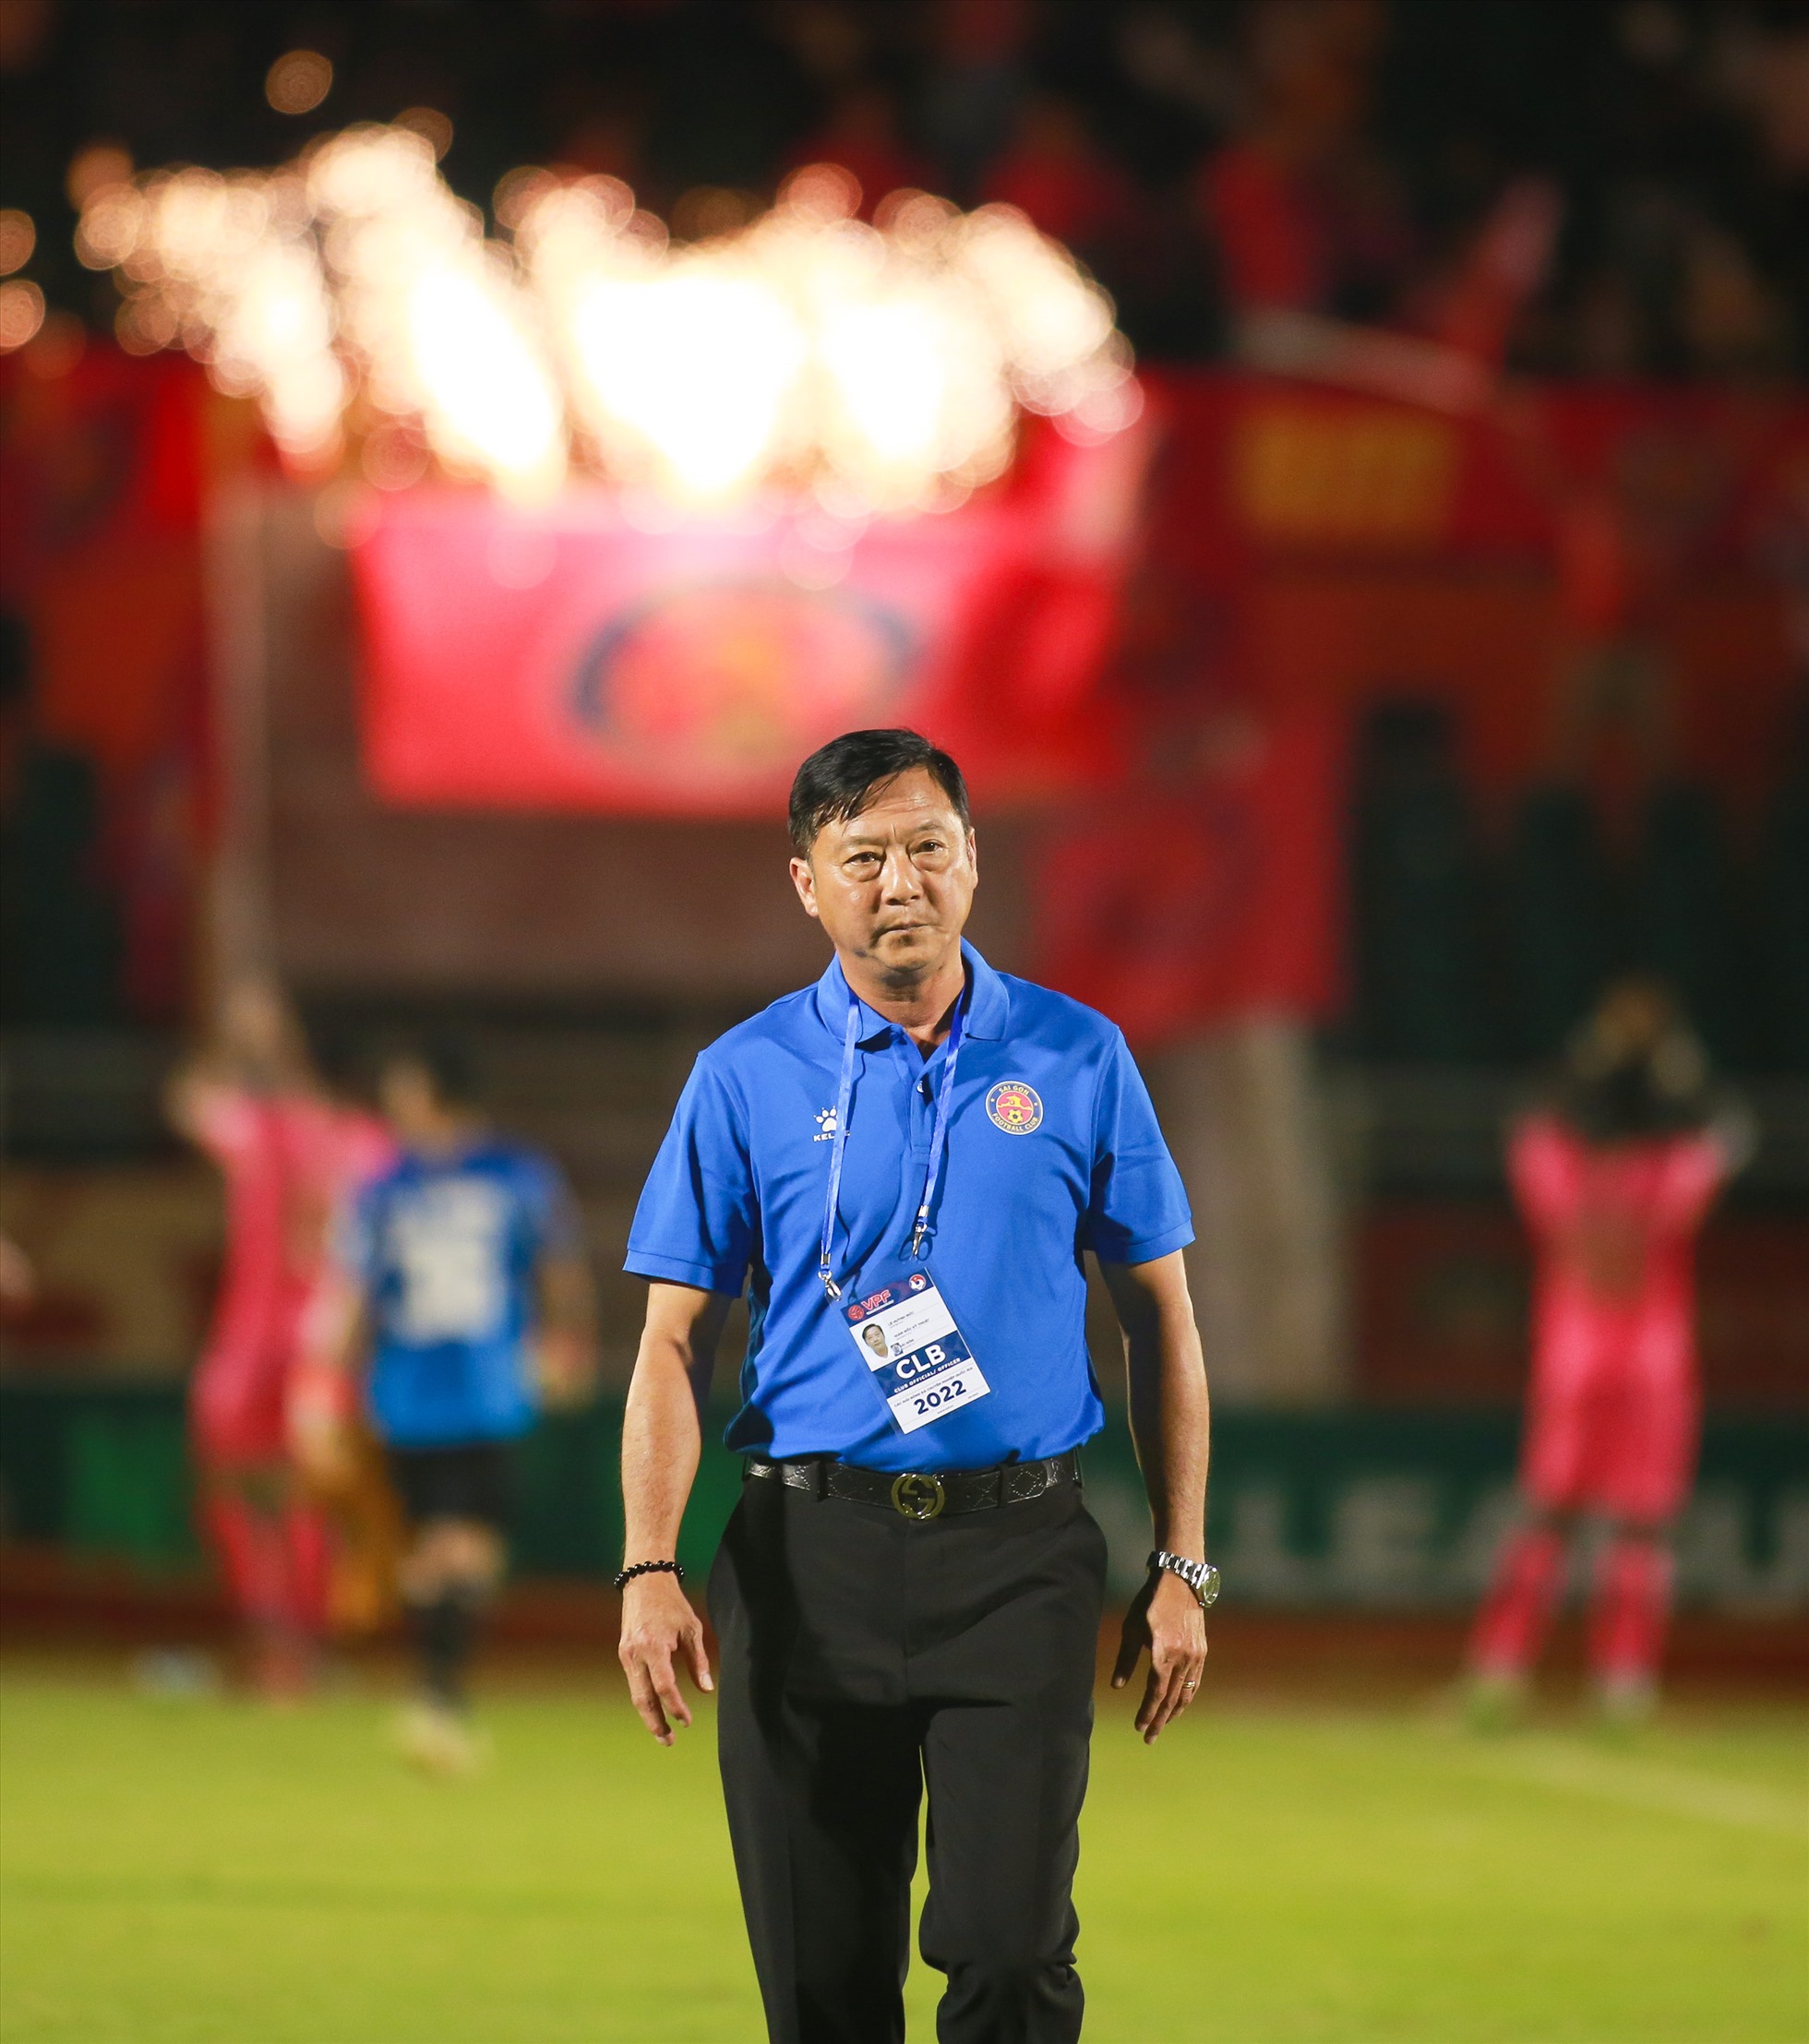 Chung cuộc, câu lạc bộ Sài Gòn nhận thất bại với tỉ số chung cuộc 1-2. Trận thua này khiến huấn luyện viên Lê Huỳnh Đức và các học trò tiếp tục dặm chân ở vị trí cuối bảng sau khi kết thúc lượt đi V.League 2022 vớ chỉ vỏn vẹn 7 điểm.